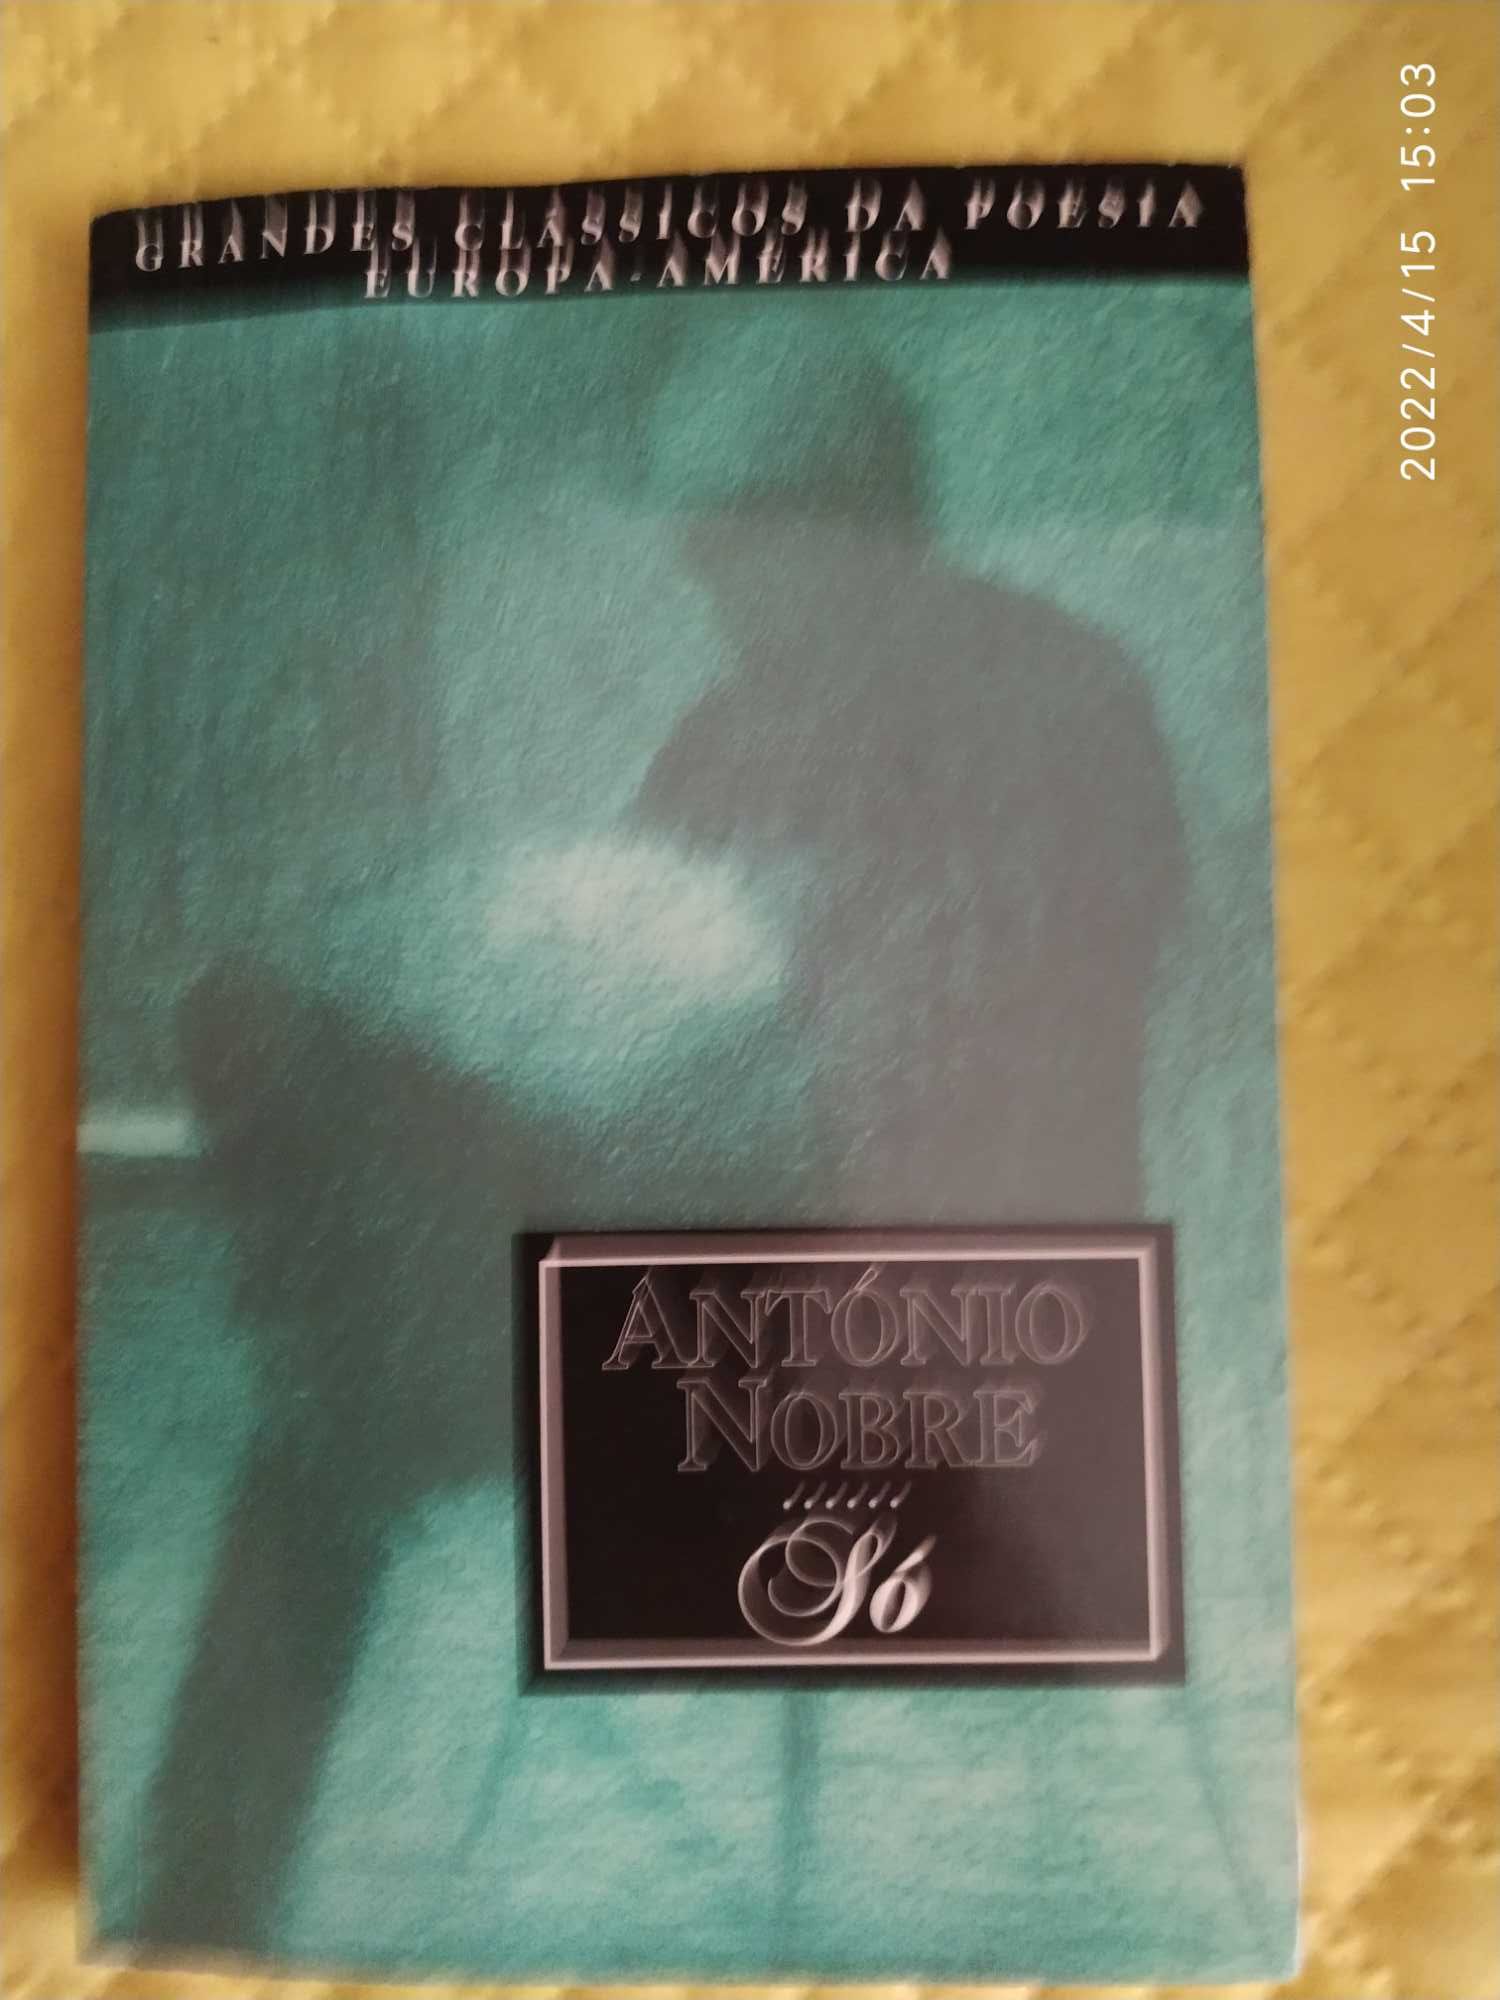 Livro "Só" de António Nobre